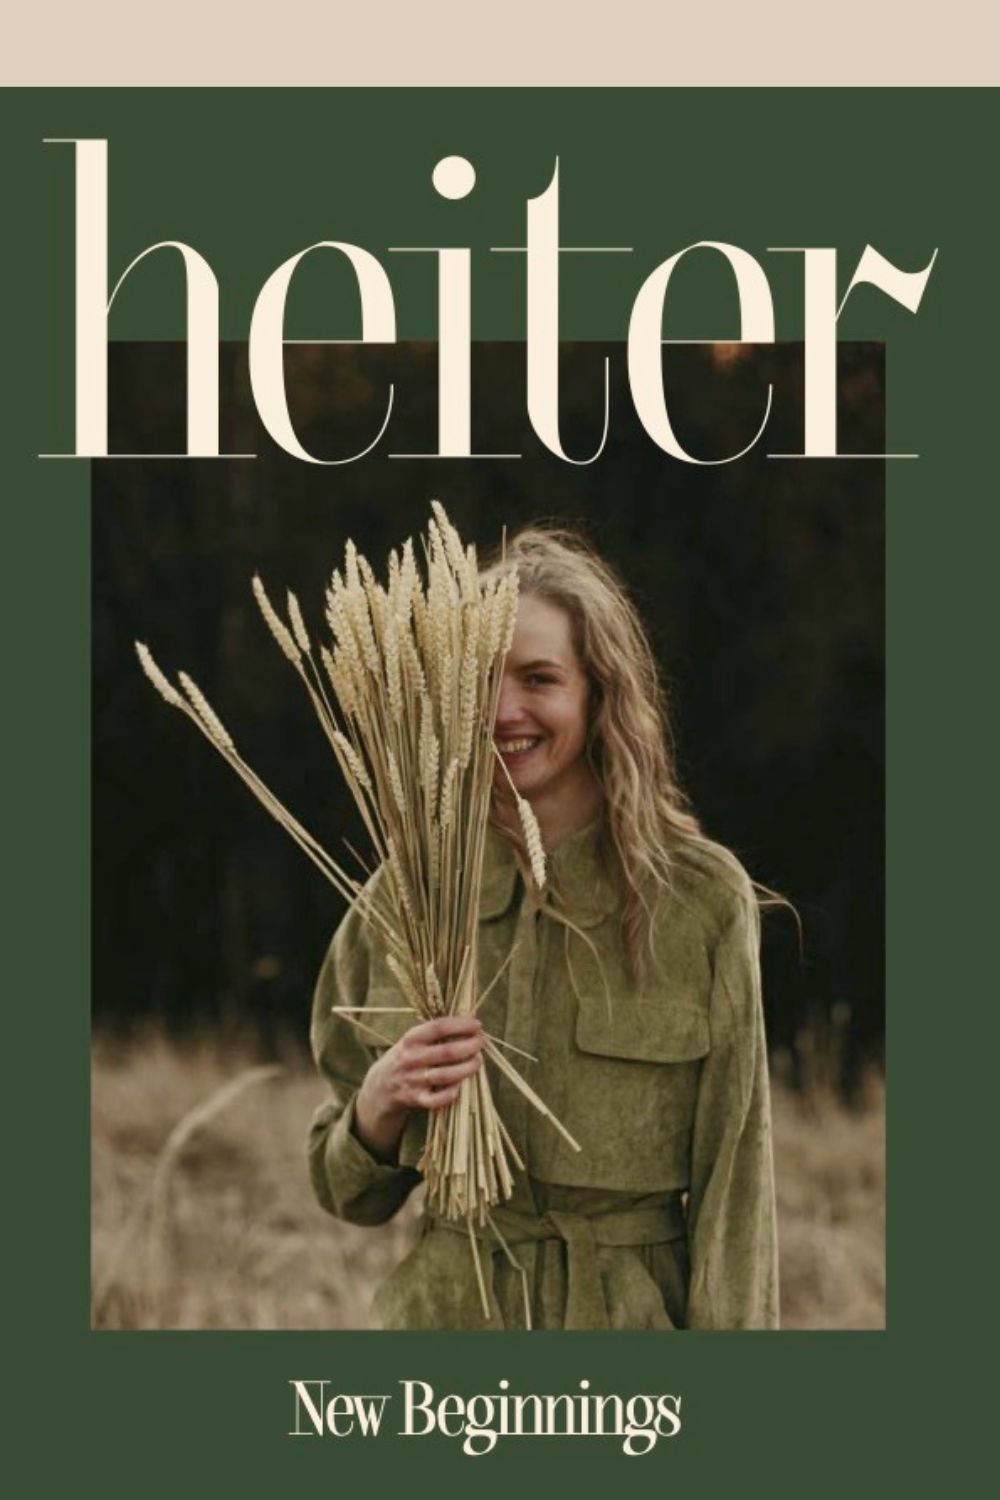 Heiter Magazine No. 1 New Beginnings cover